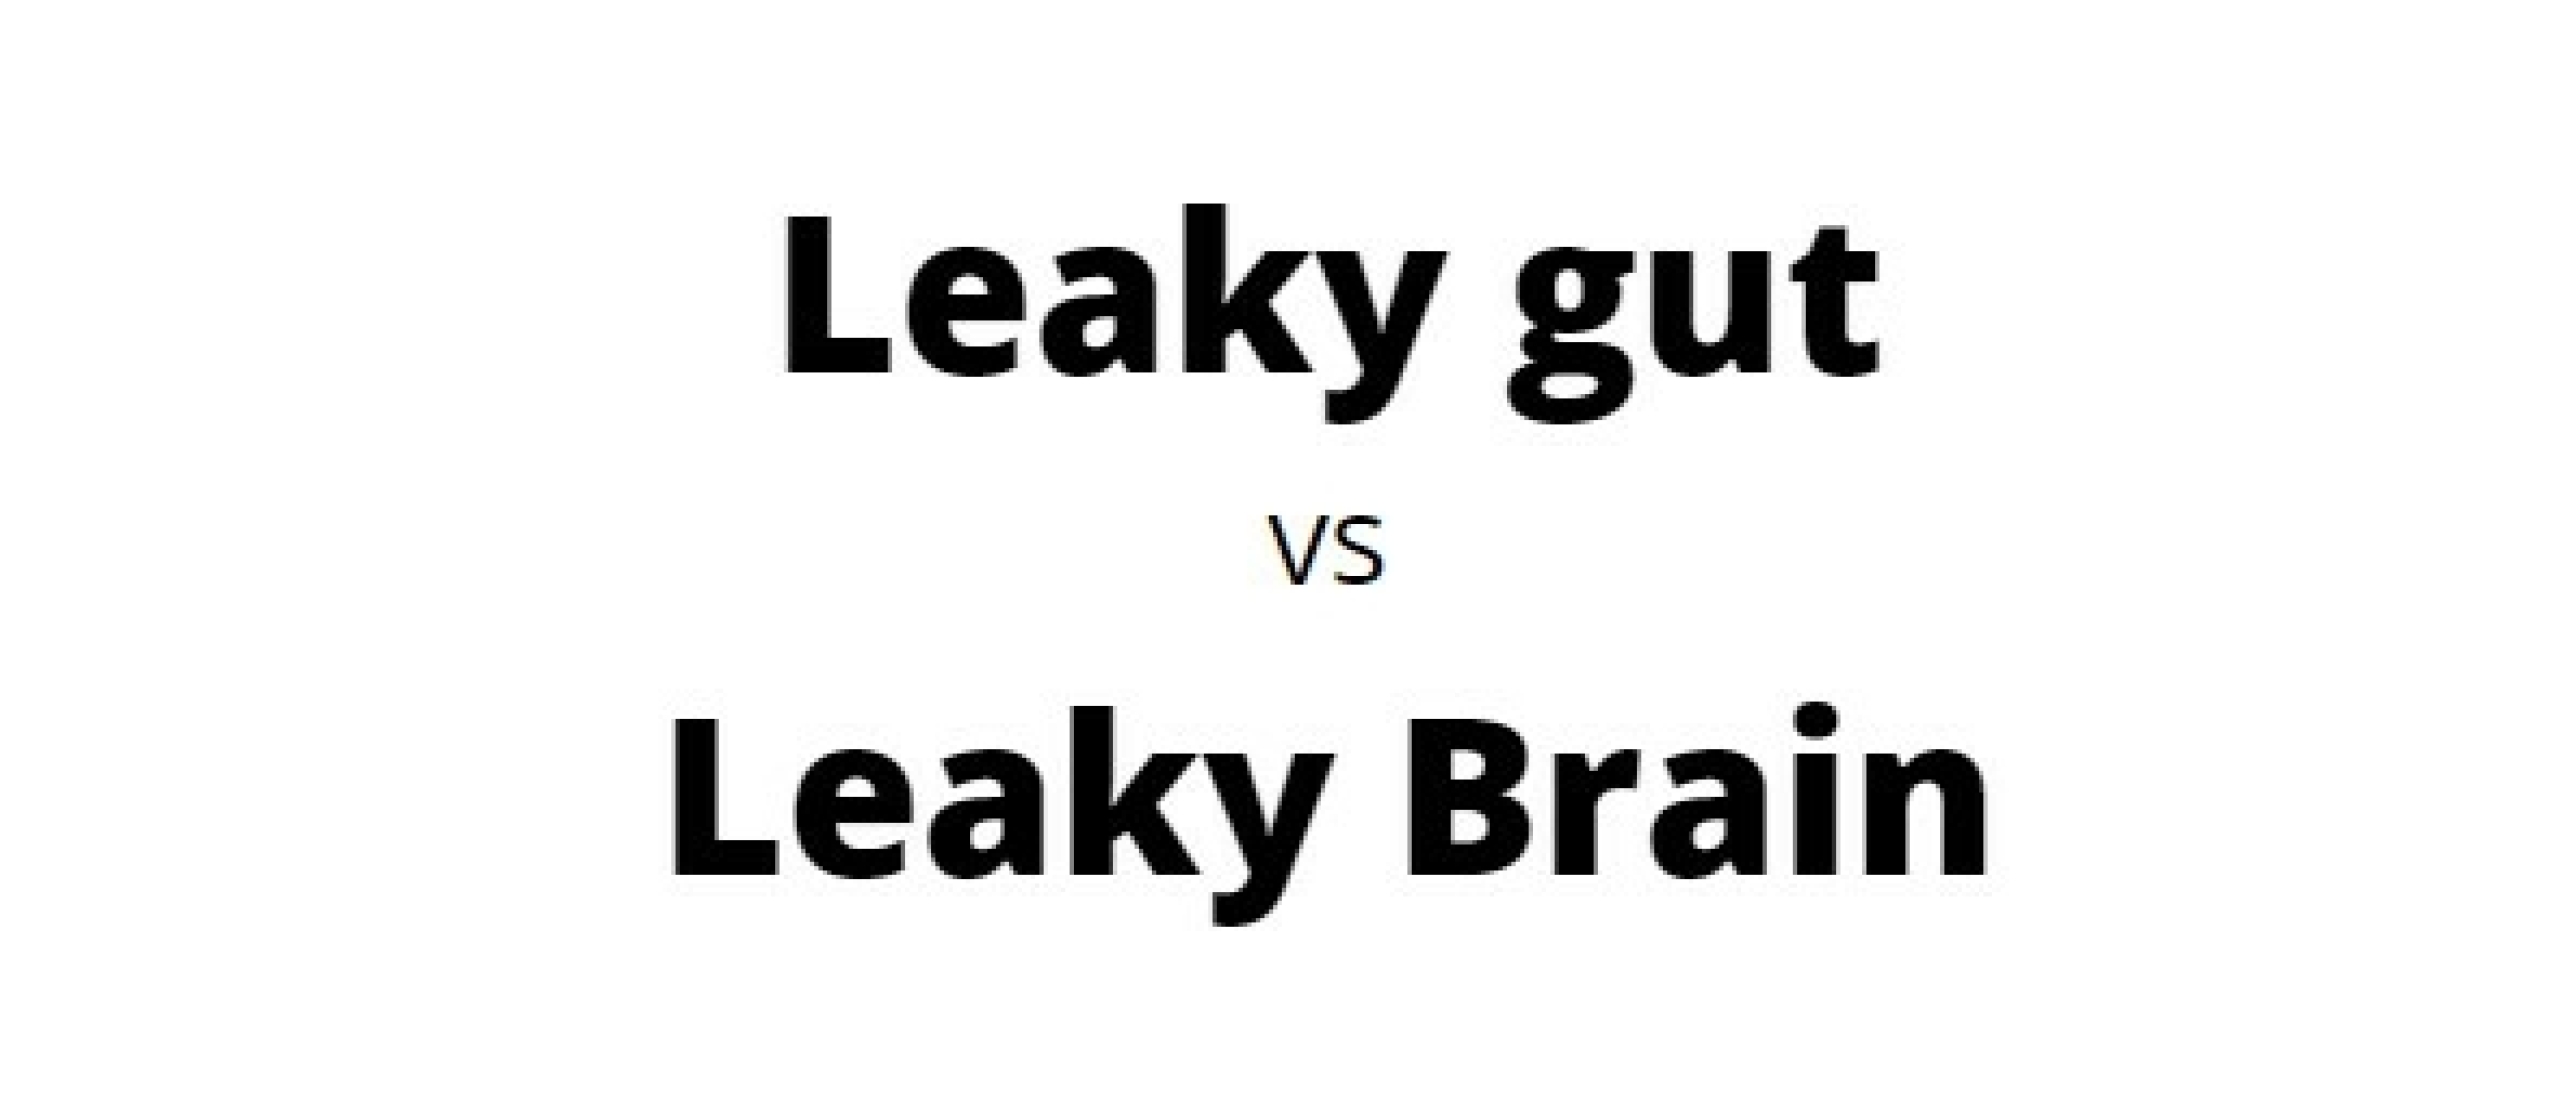 Leaky brain, waar hebben we het eigenlijk over?